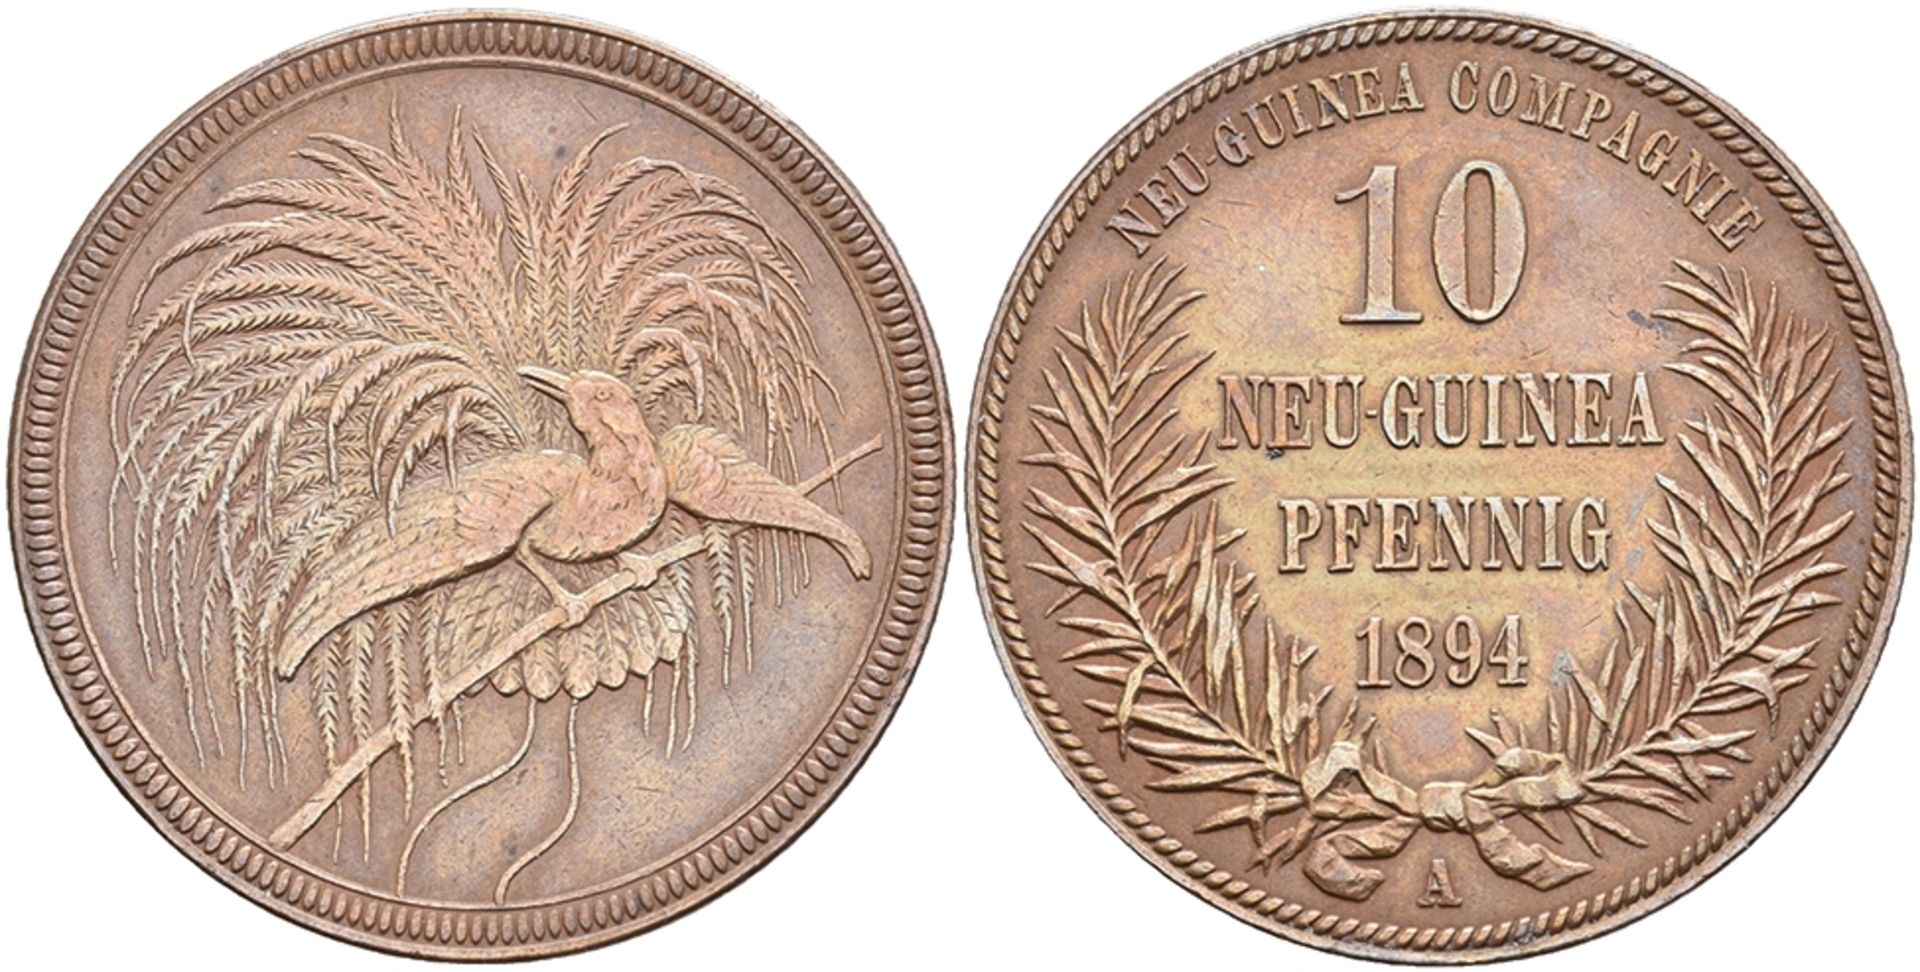 Deutsch-Neuguinea, 10 Pfennig 1894 A., N 703, vz.